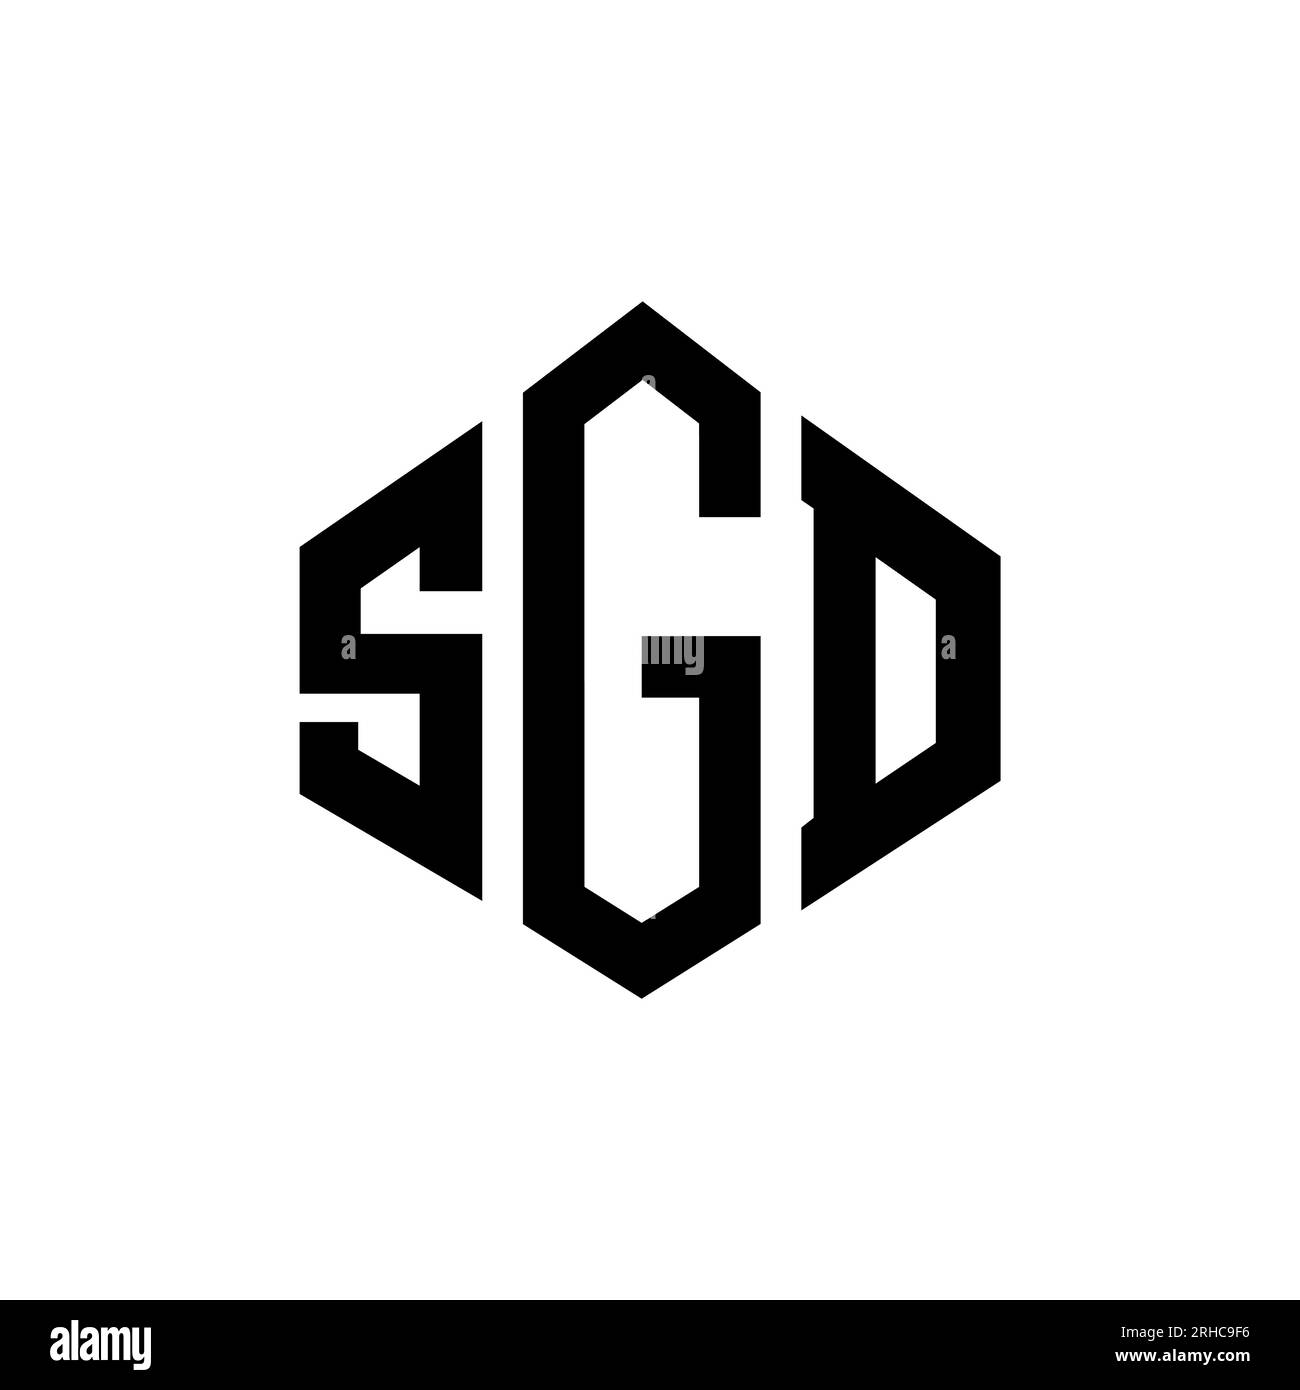 sgd-premium #sgd-nation